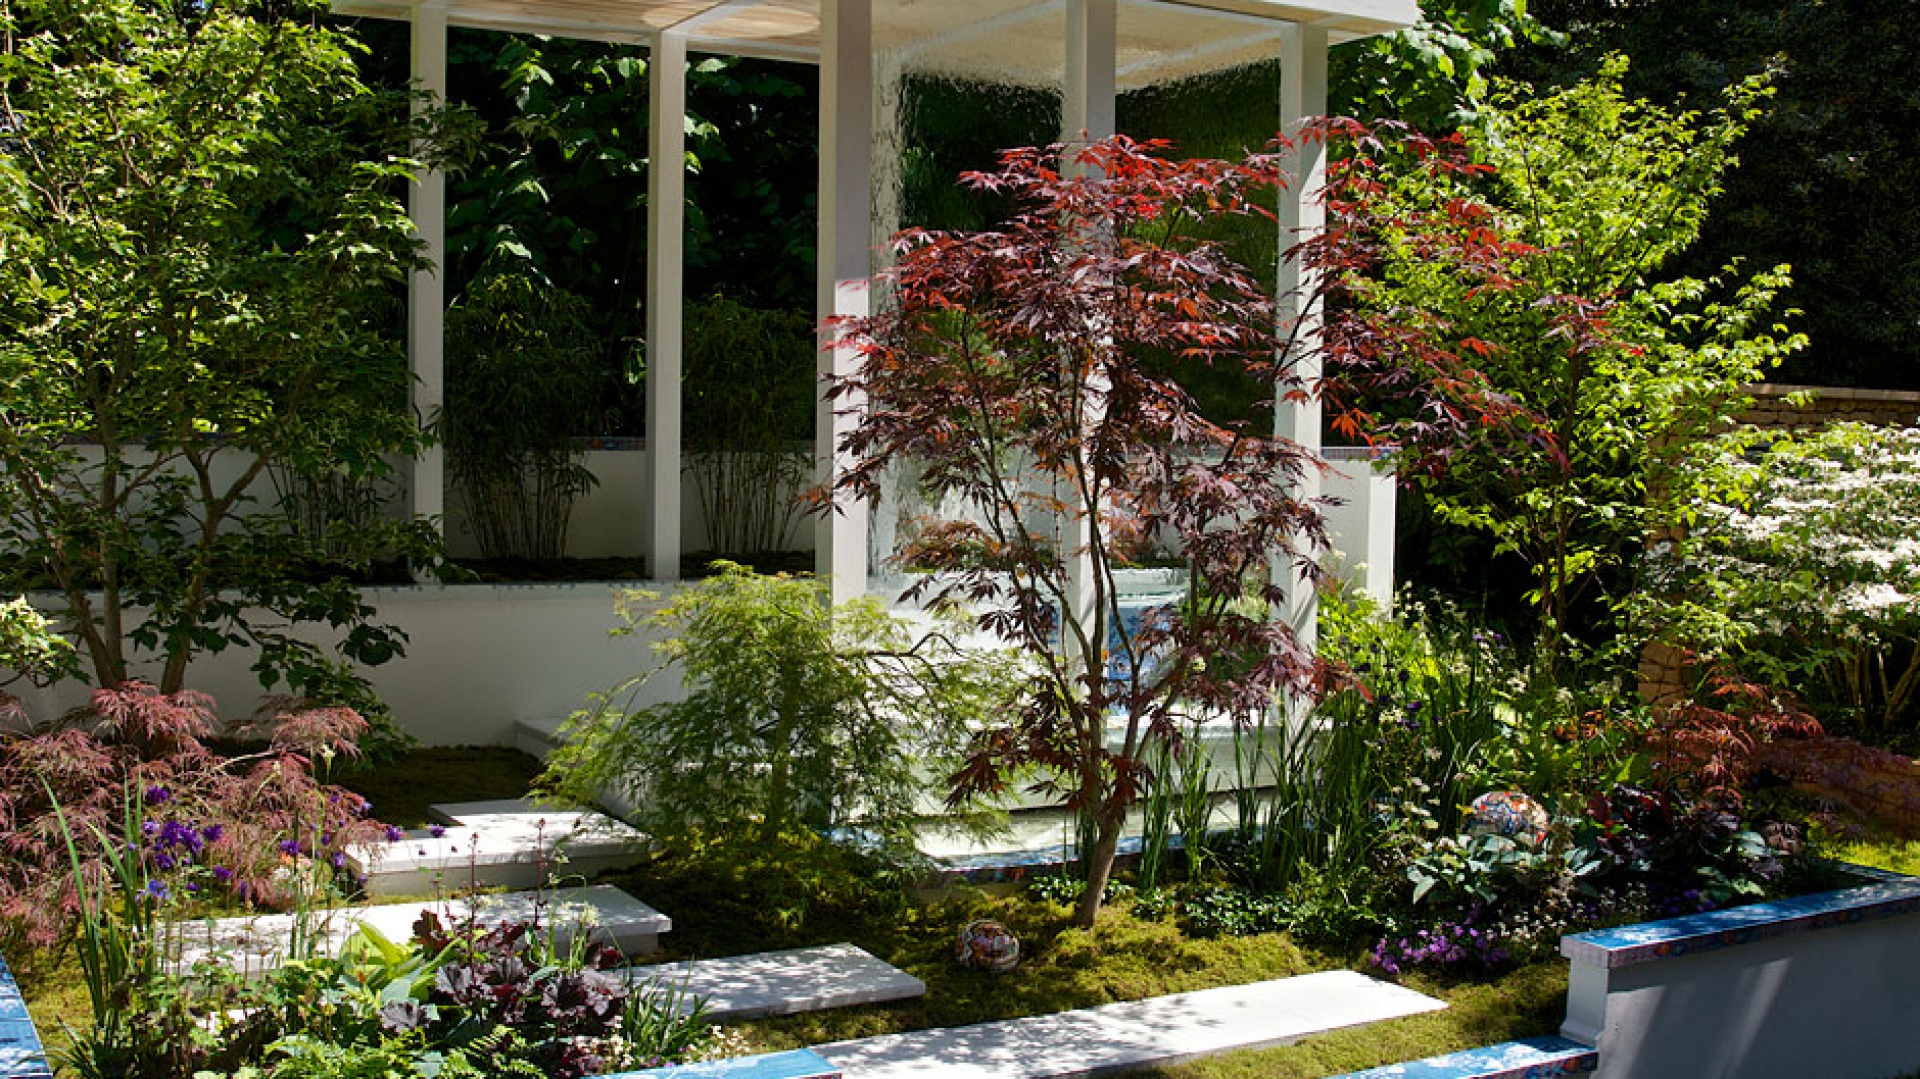 Mała architektura w ogrodzie: pergole, kratki